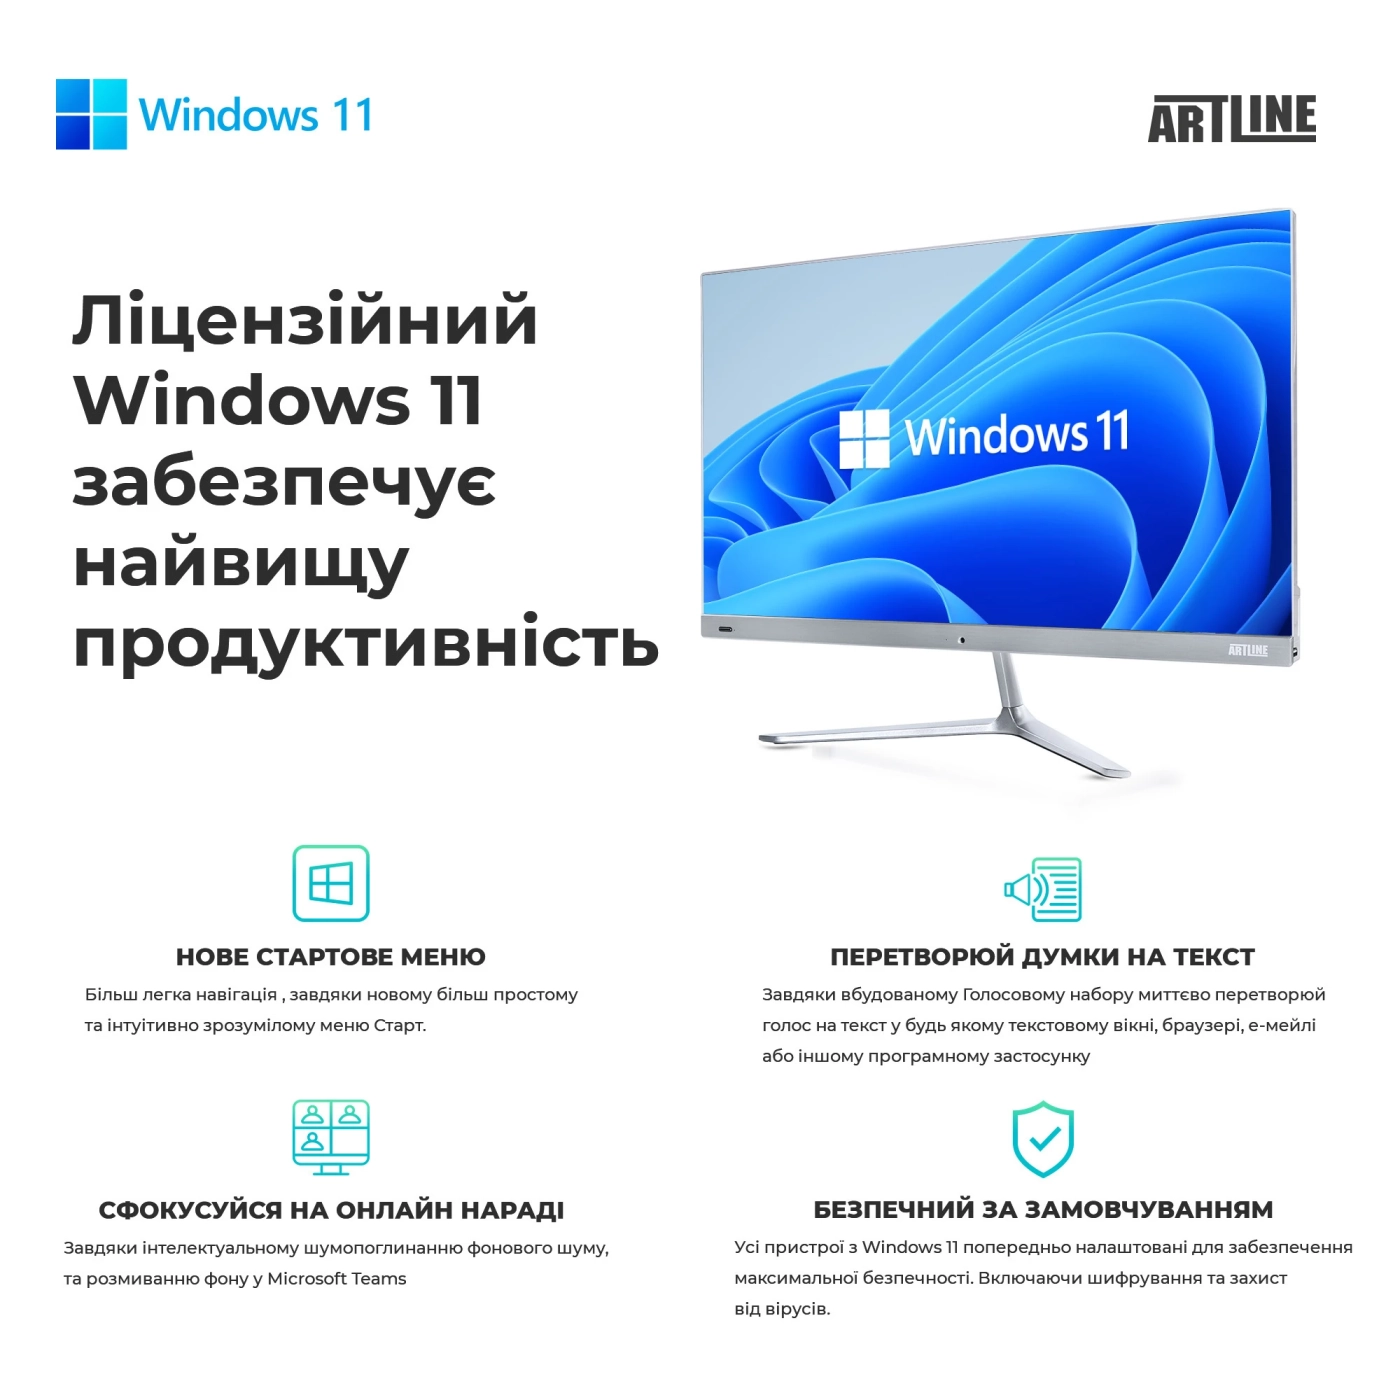 Купить Рабочая станция ARTLINE WorkStation W99 Windows 11 Pro (W99v67Win) - фото 11